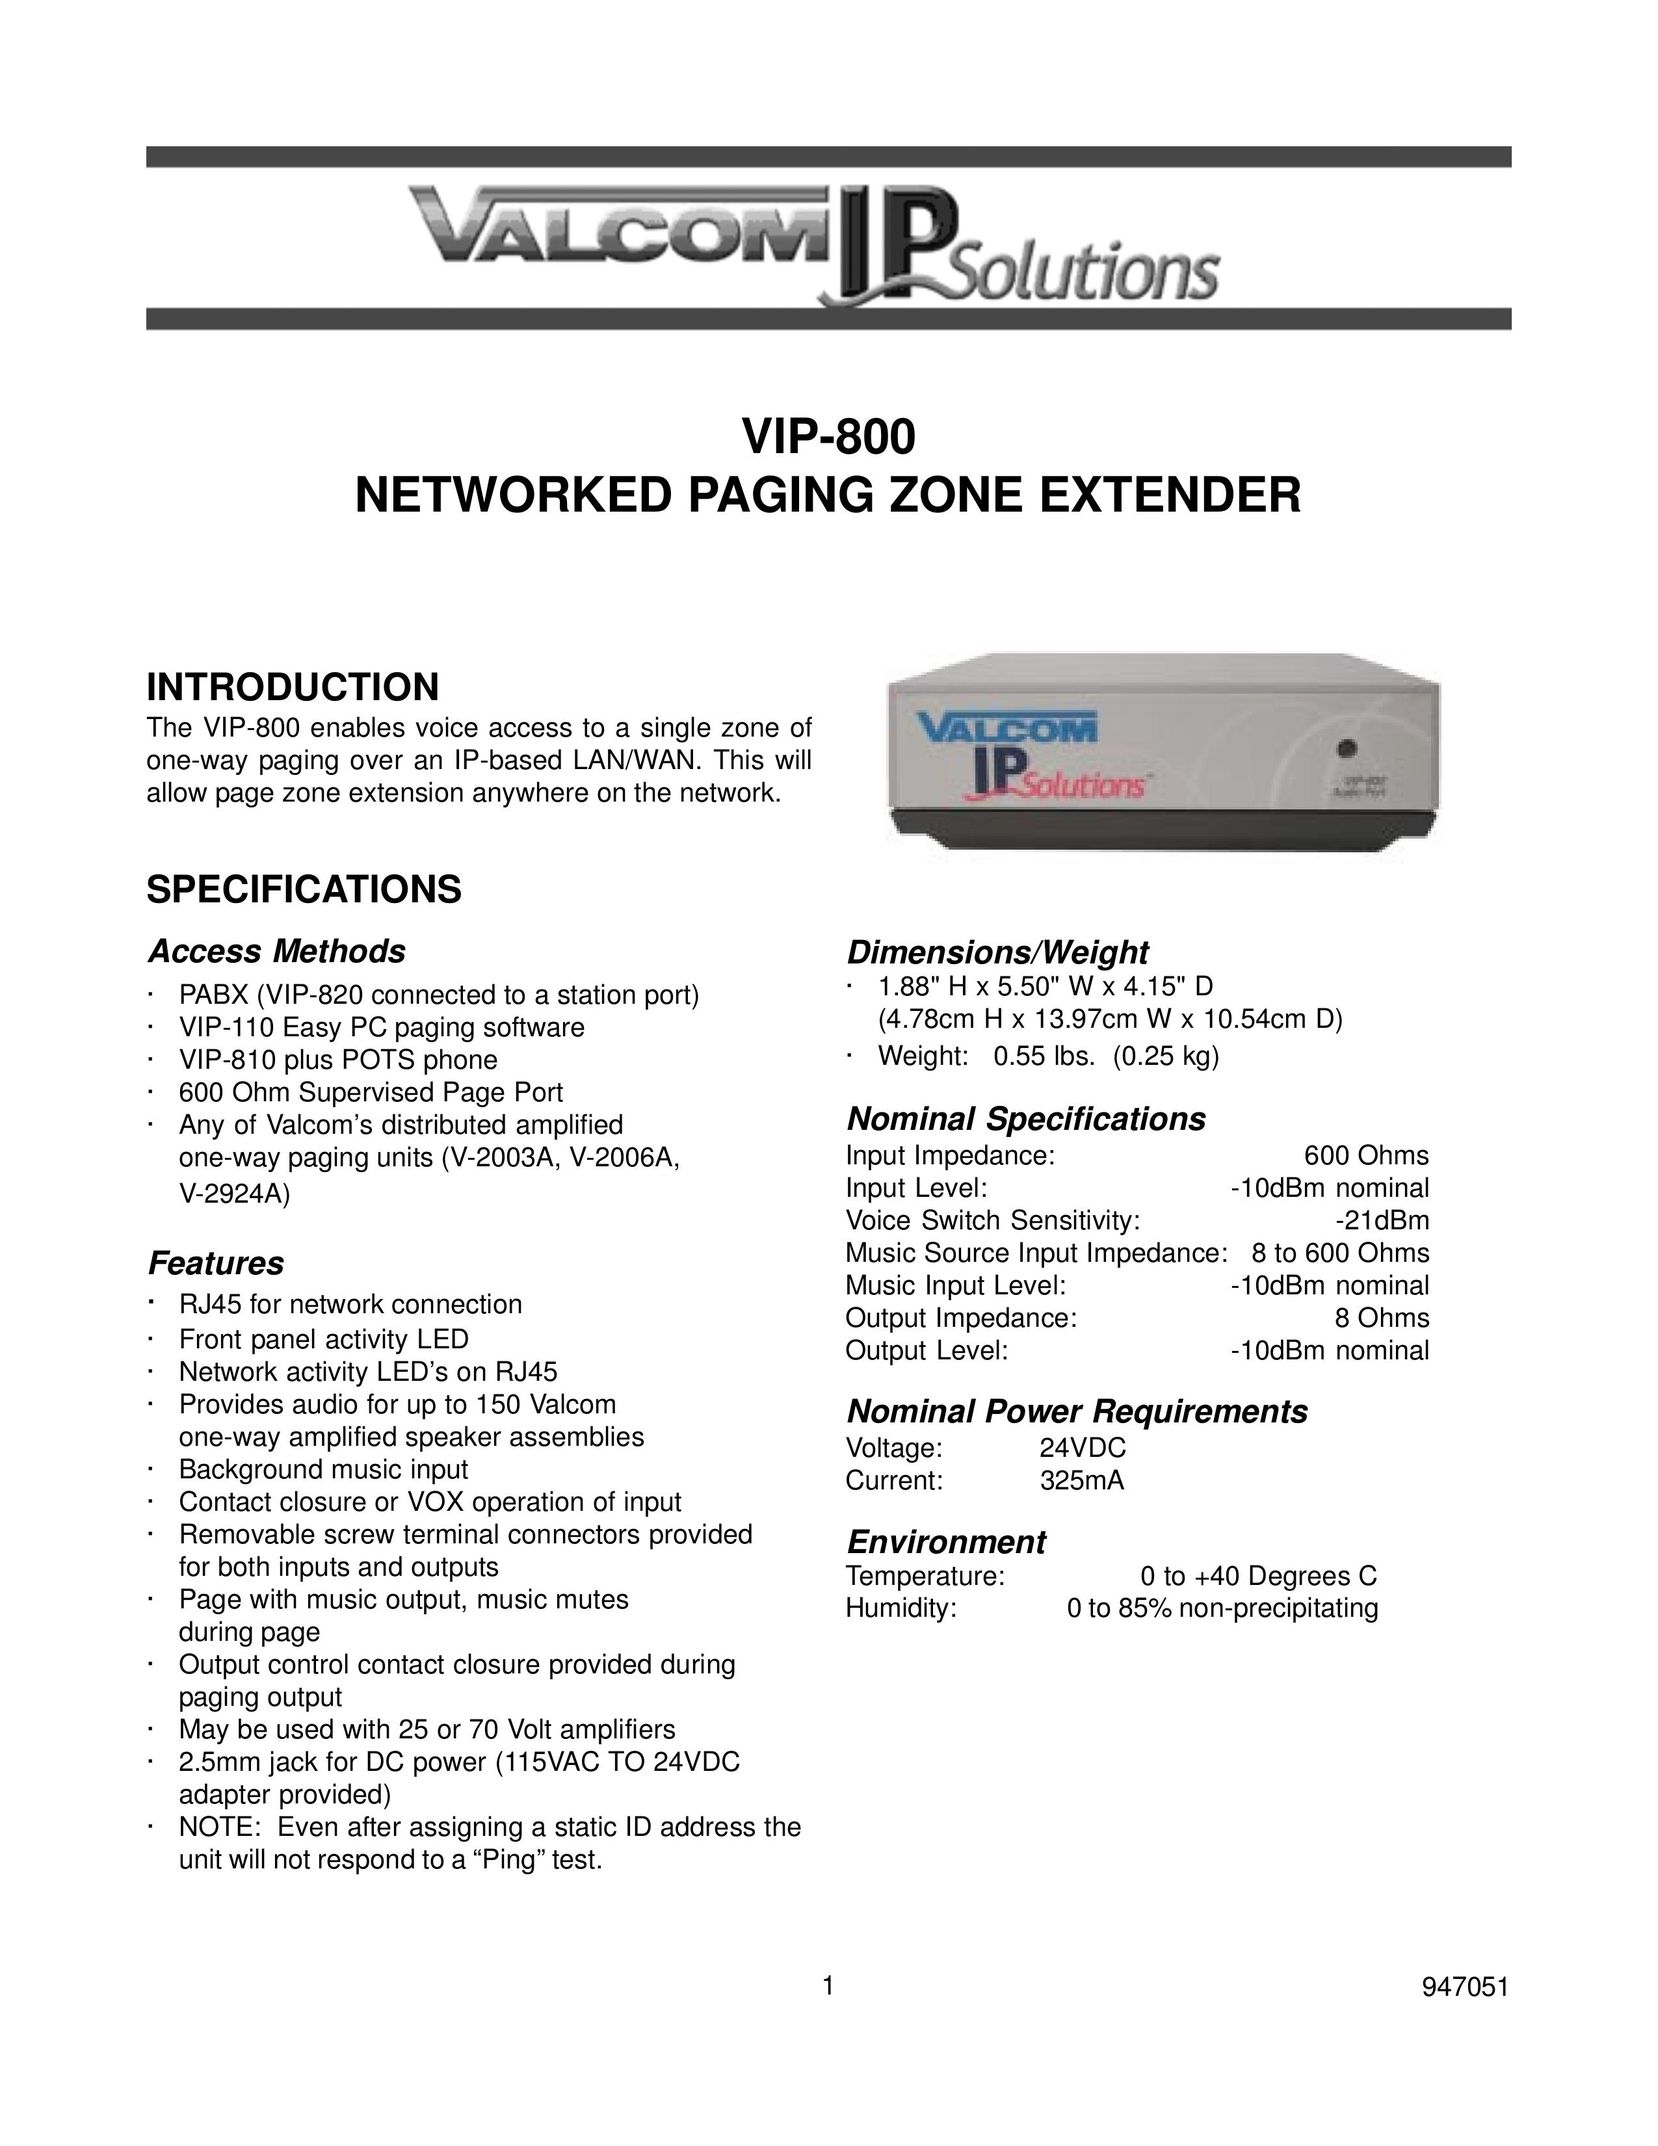 Valcom VIP-800 Network Router User Manual